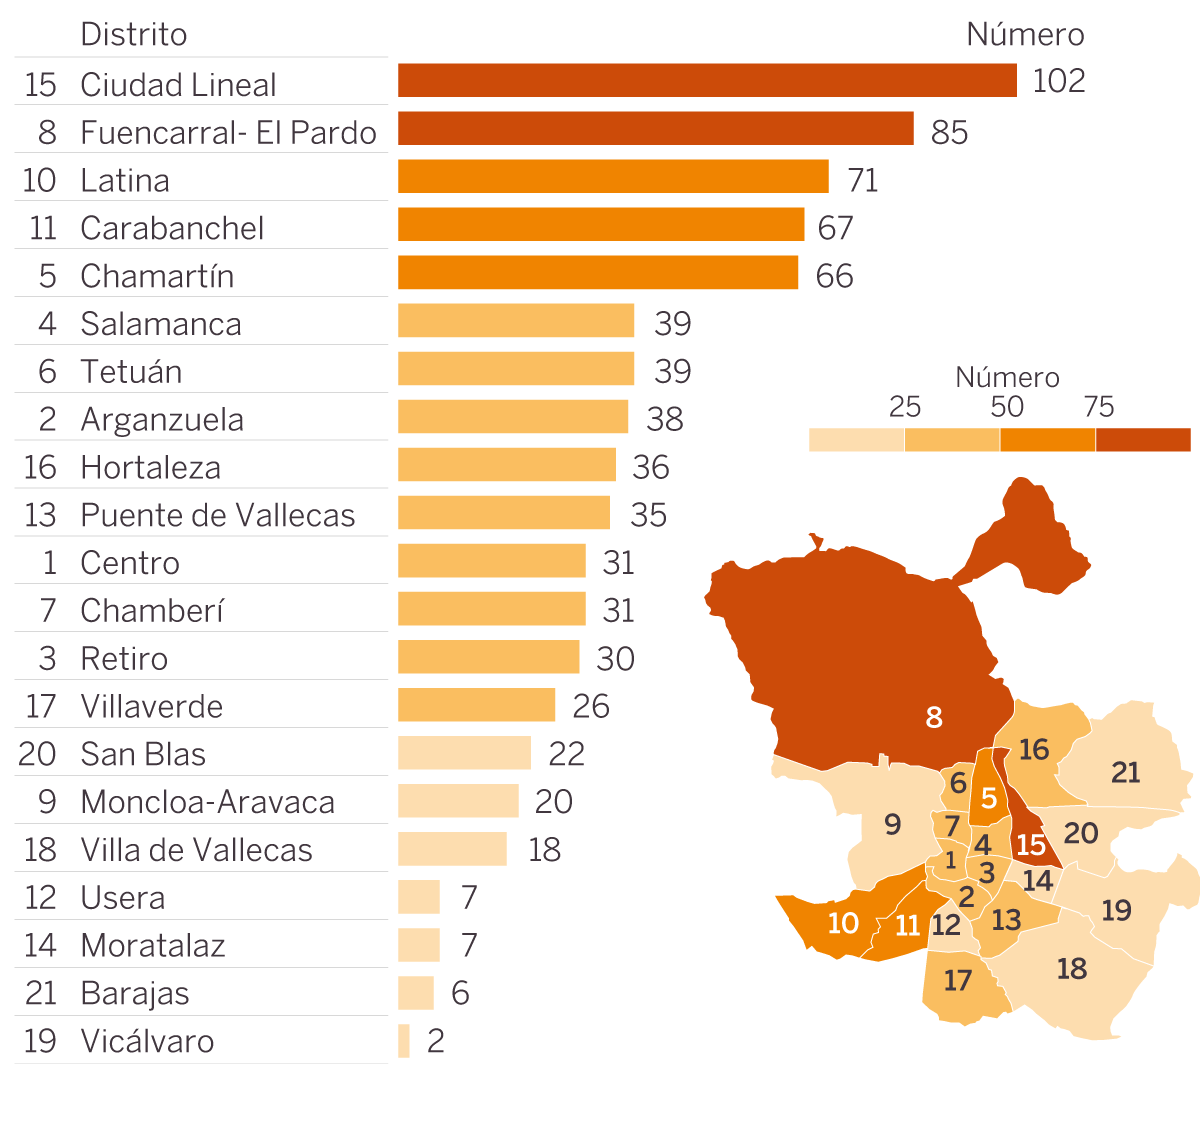 Número de locales convertidos en viviendas en Madrid dividido por distritos. 